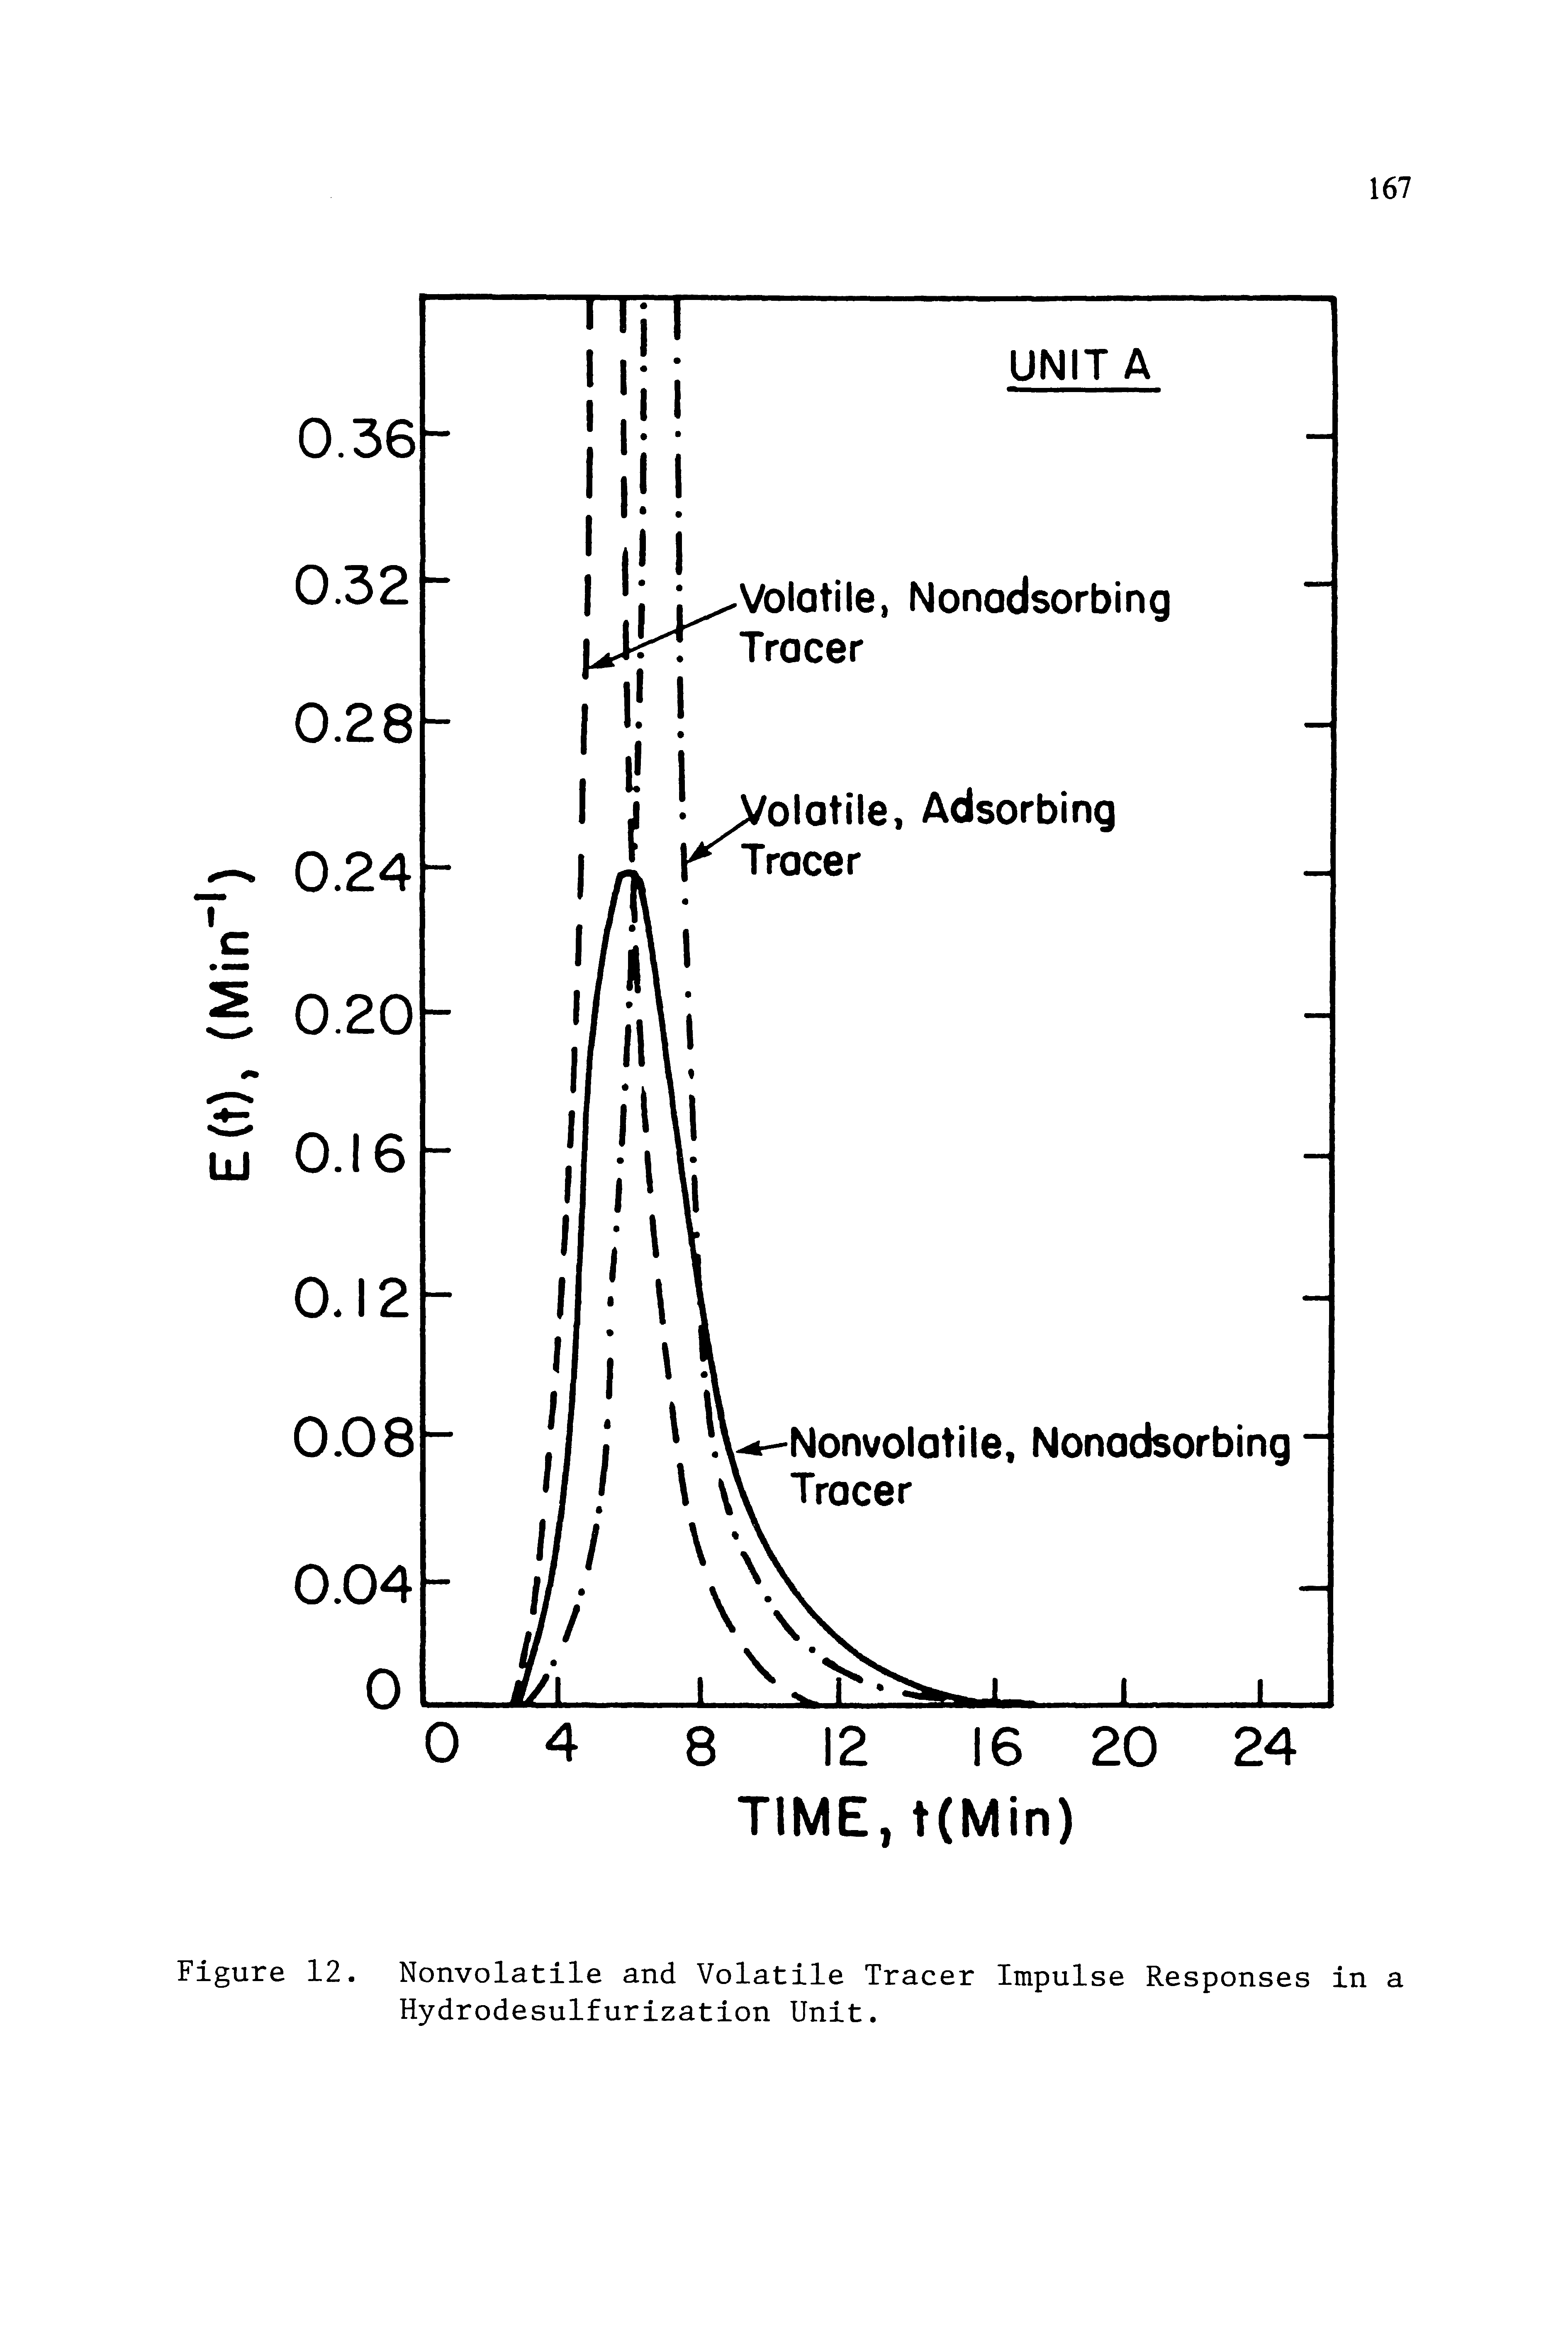 Figure 12. Nonvolatile and Volatile Tracer Impulse Responses in a Hydrodesulfurization Unit.